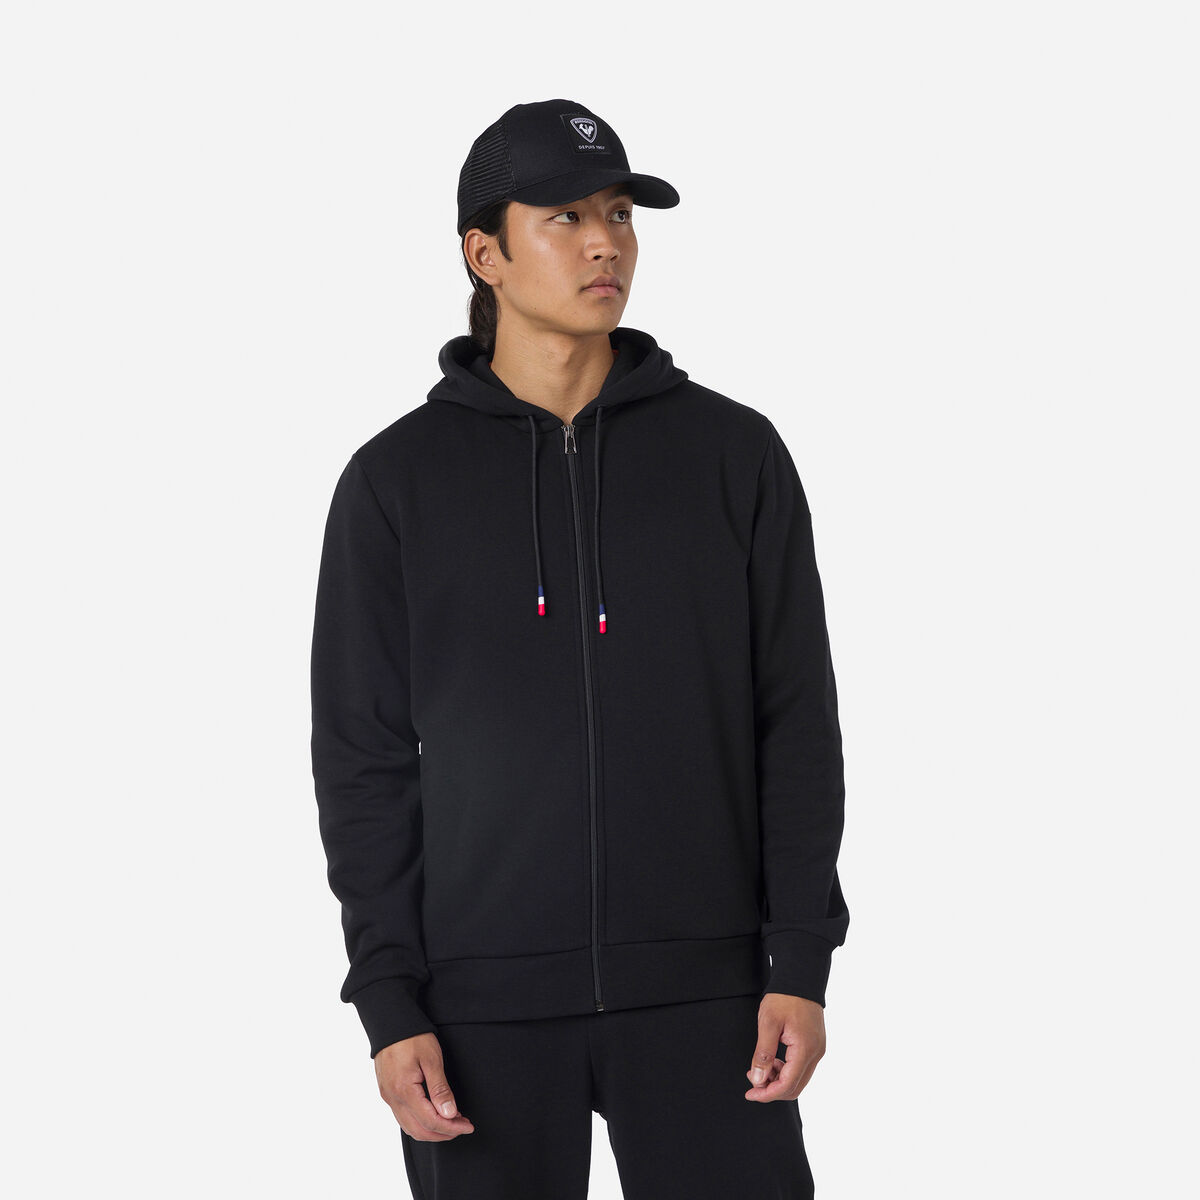 Rossignol Men's full-zip hooded logo cotton sweatshirt black